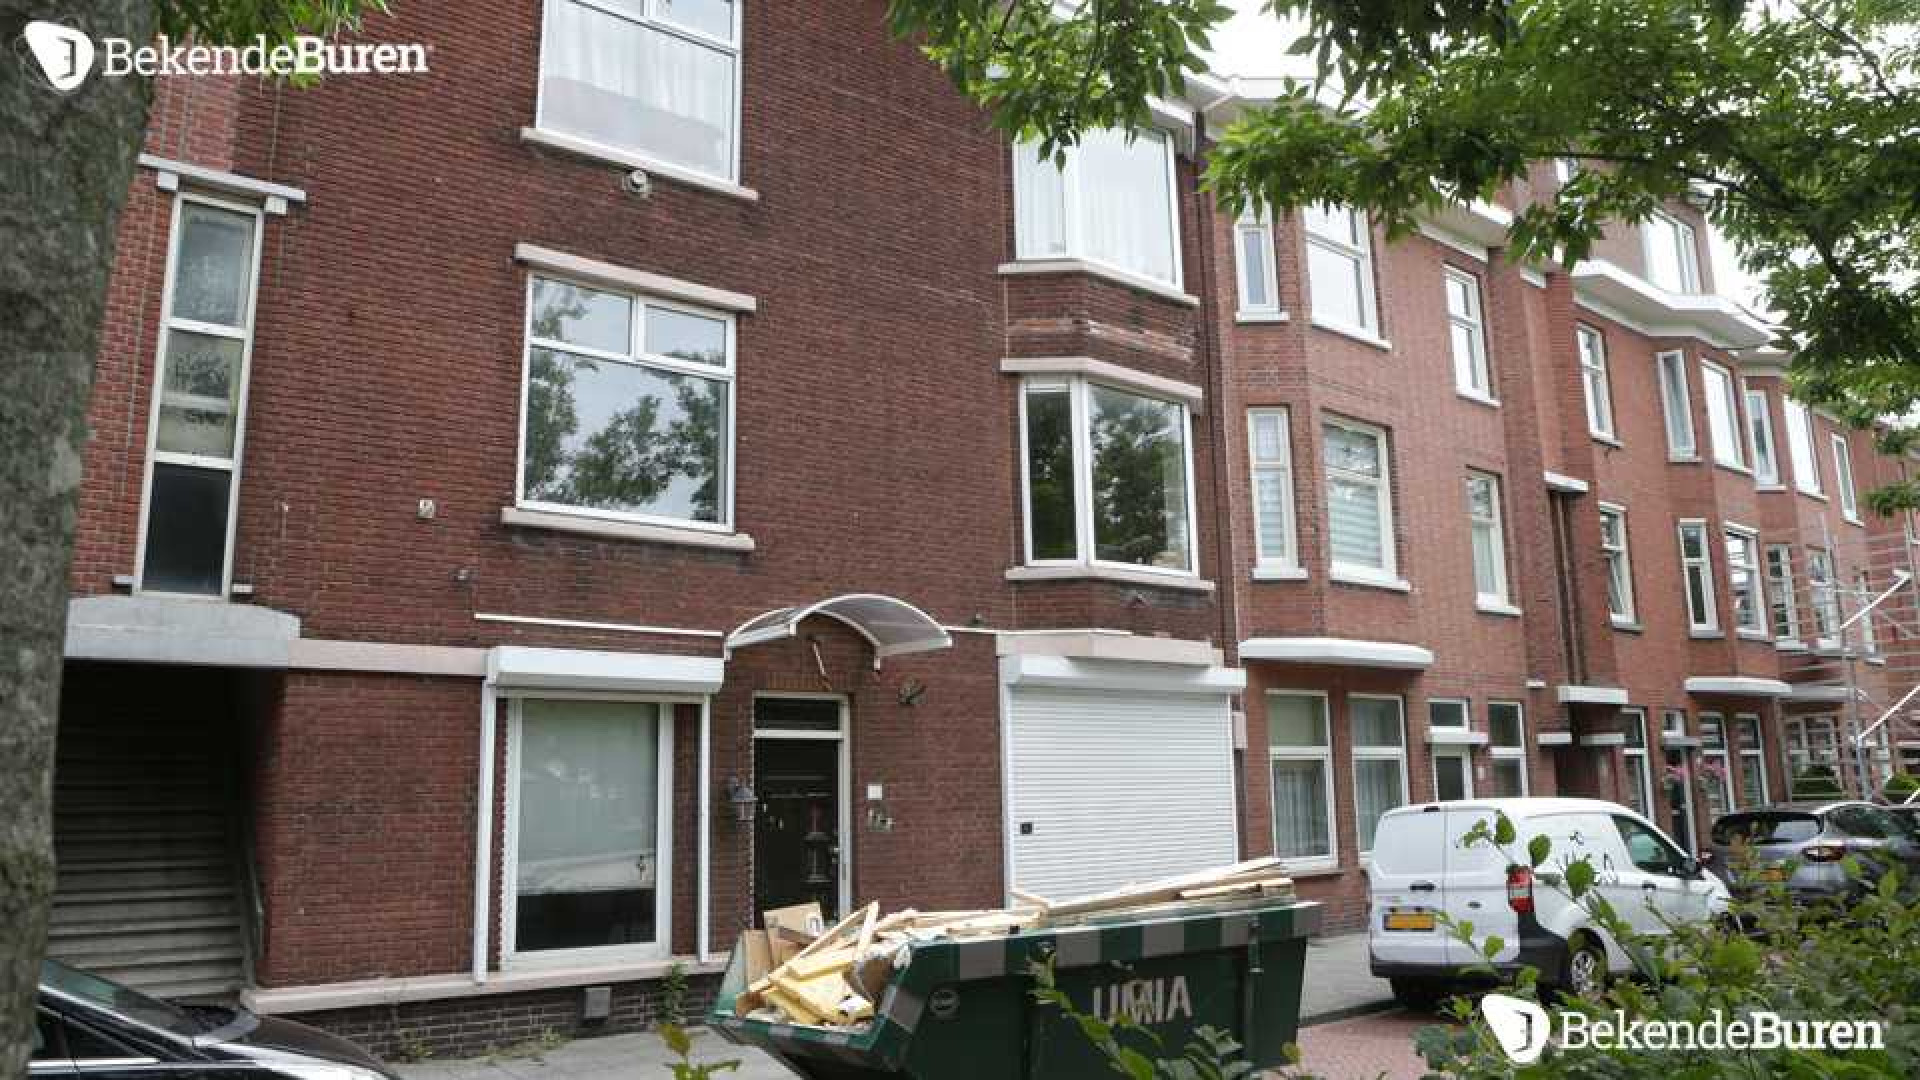 Bibi Breijman druk aan het verbouwen aan haar Haagse woning! Zie foto's 4